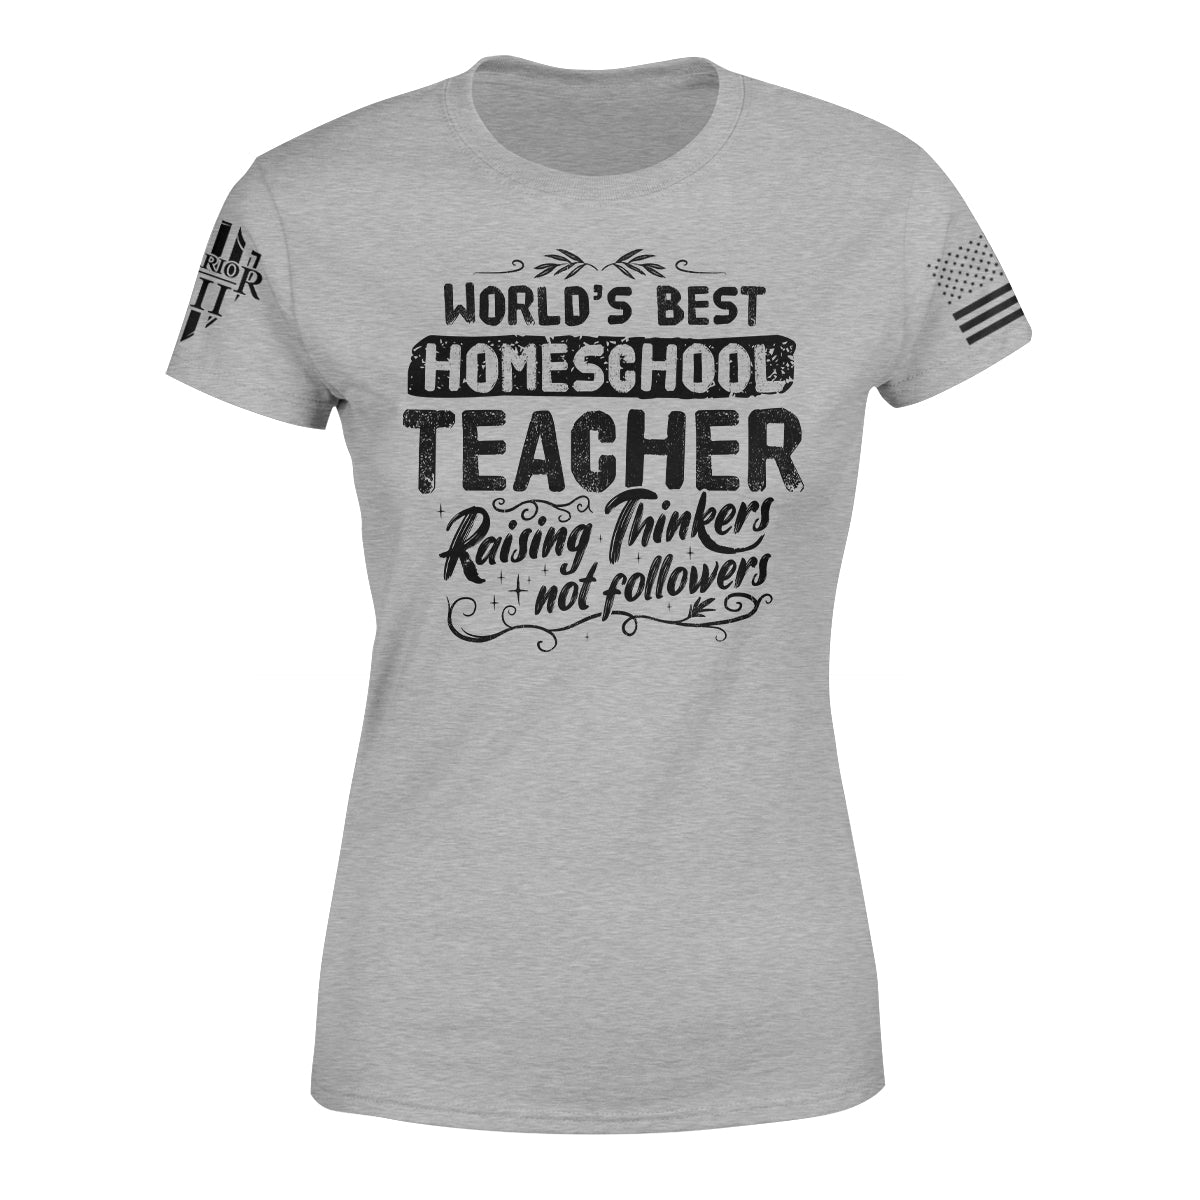 Homeschool Teacher - Women's Relaxed Fit